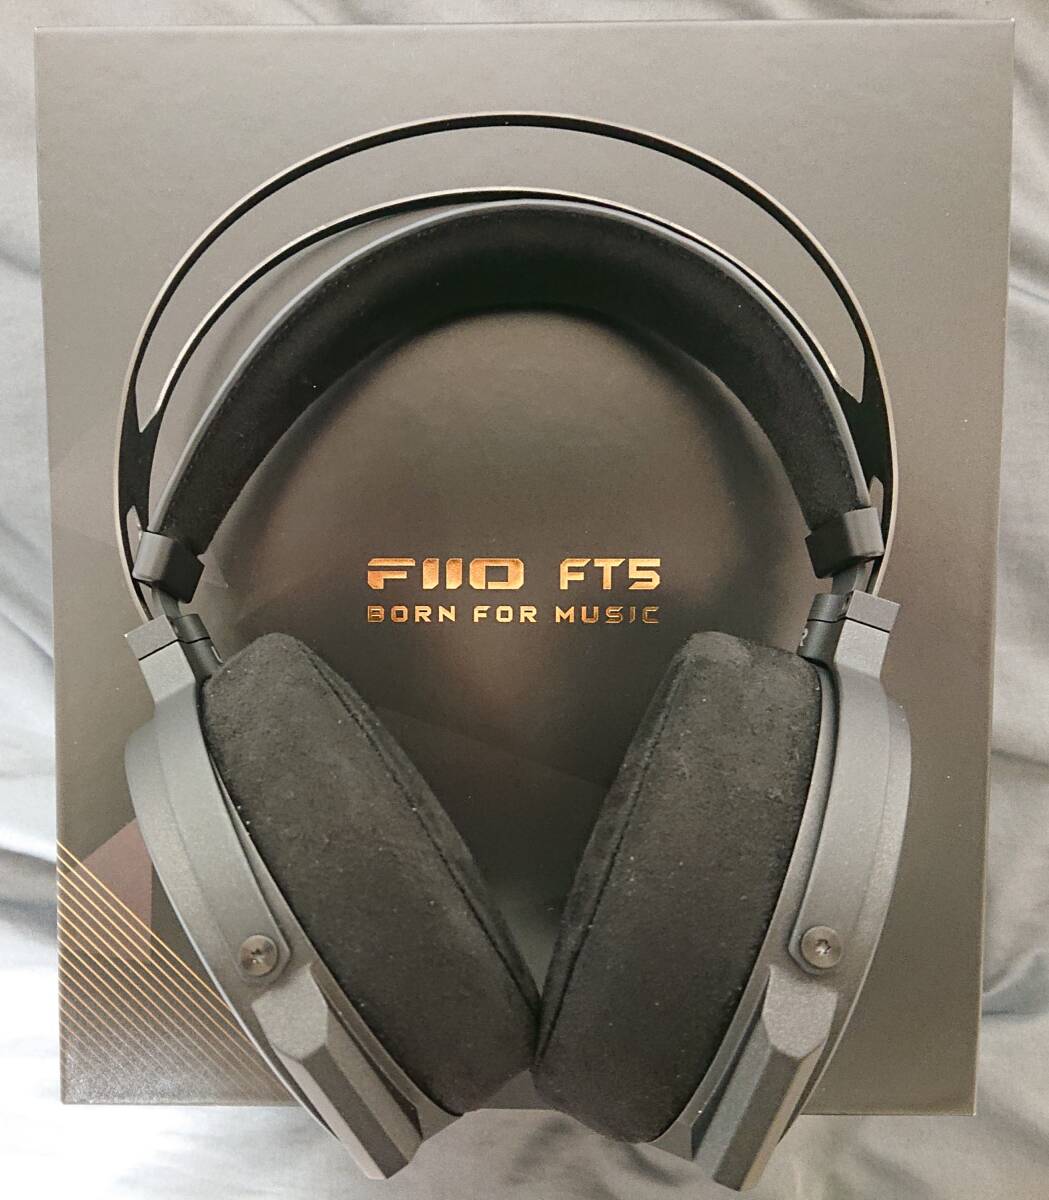 【送料無料】FIIO FT5 Black (FIO-FT5-B) 開放型 ヘッドホン 平面磁界ドライバー